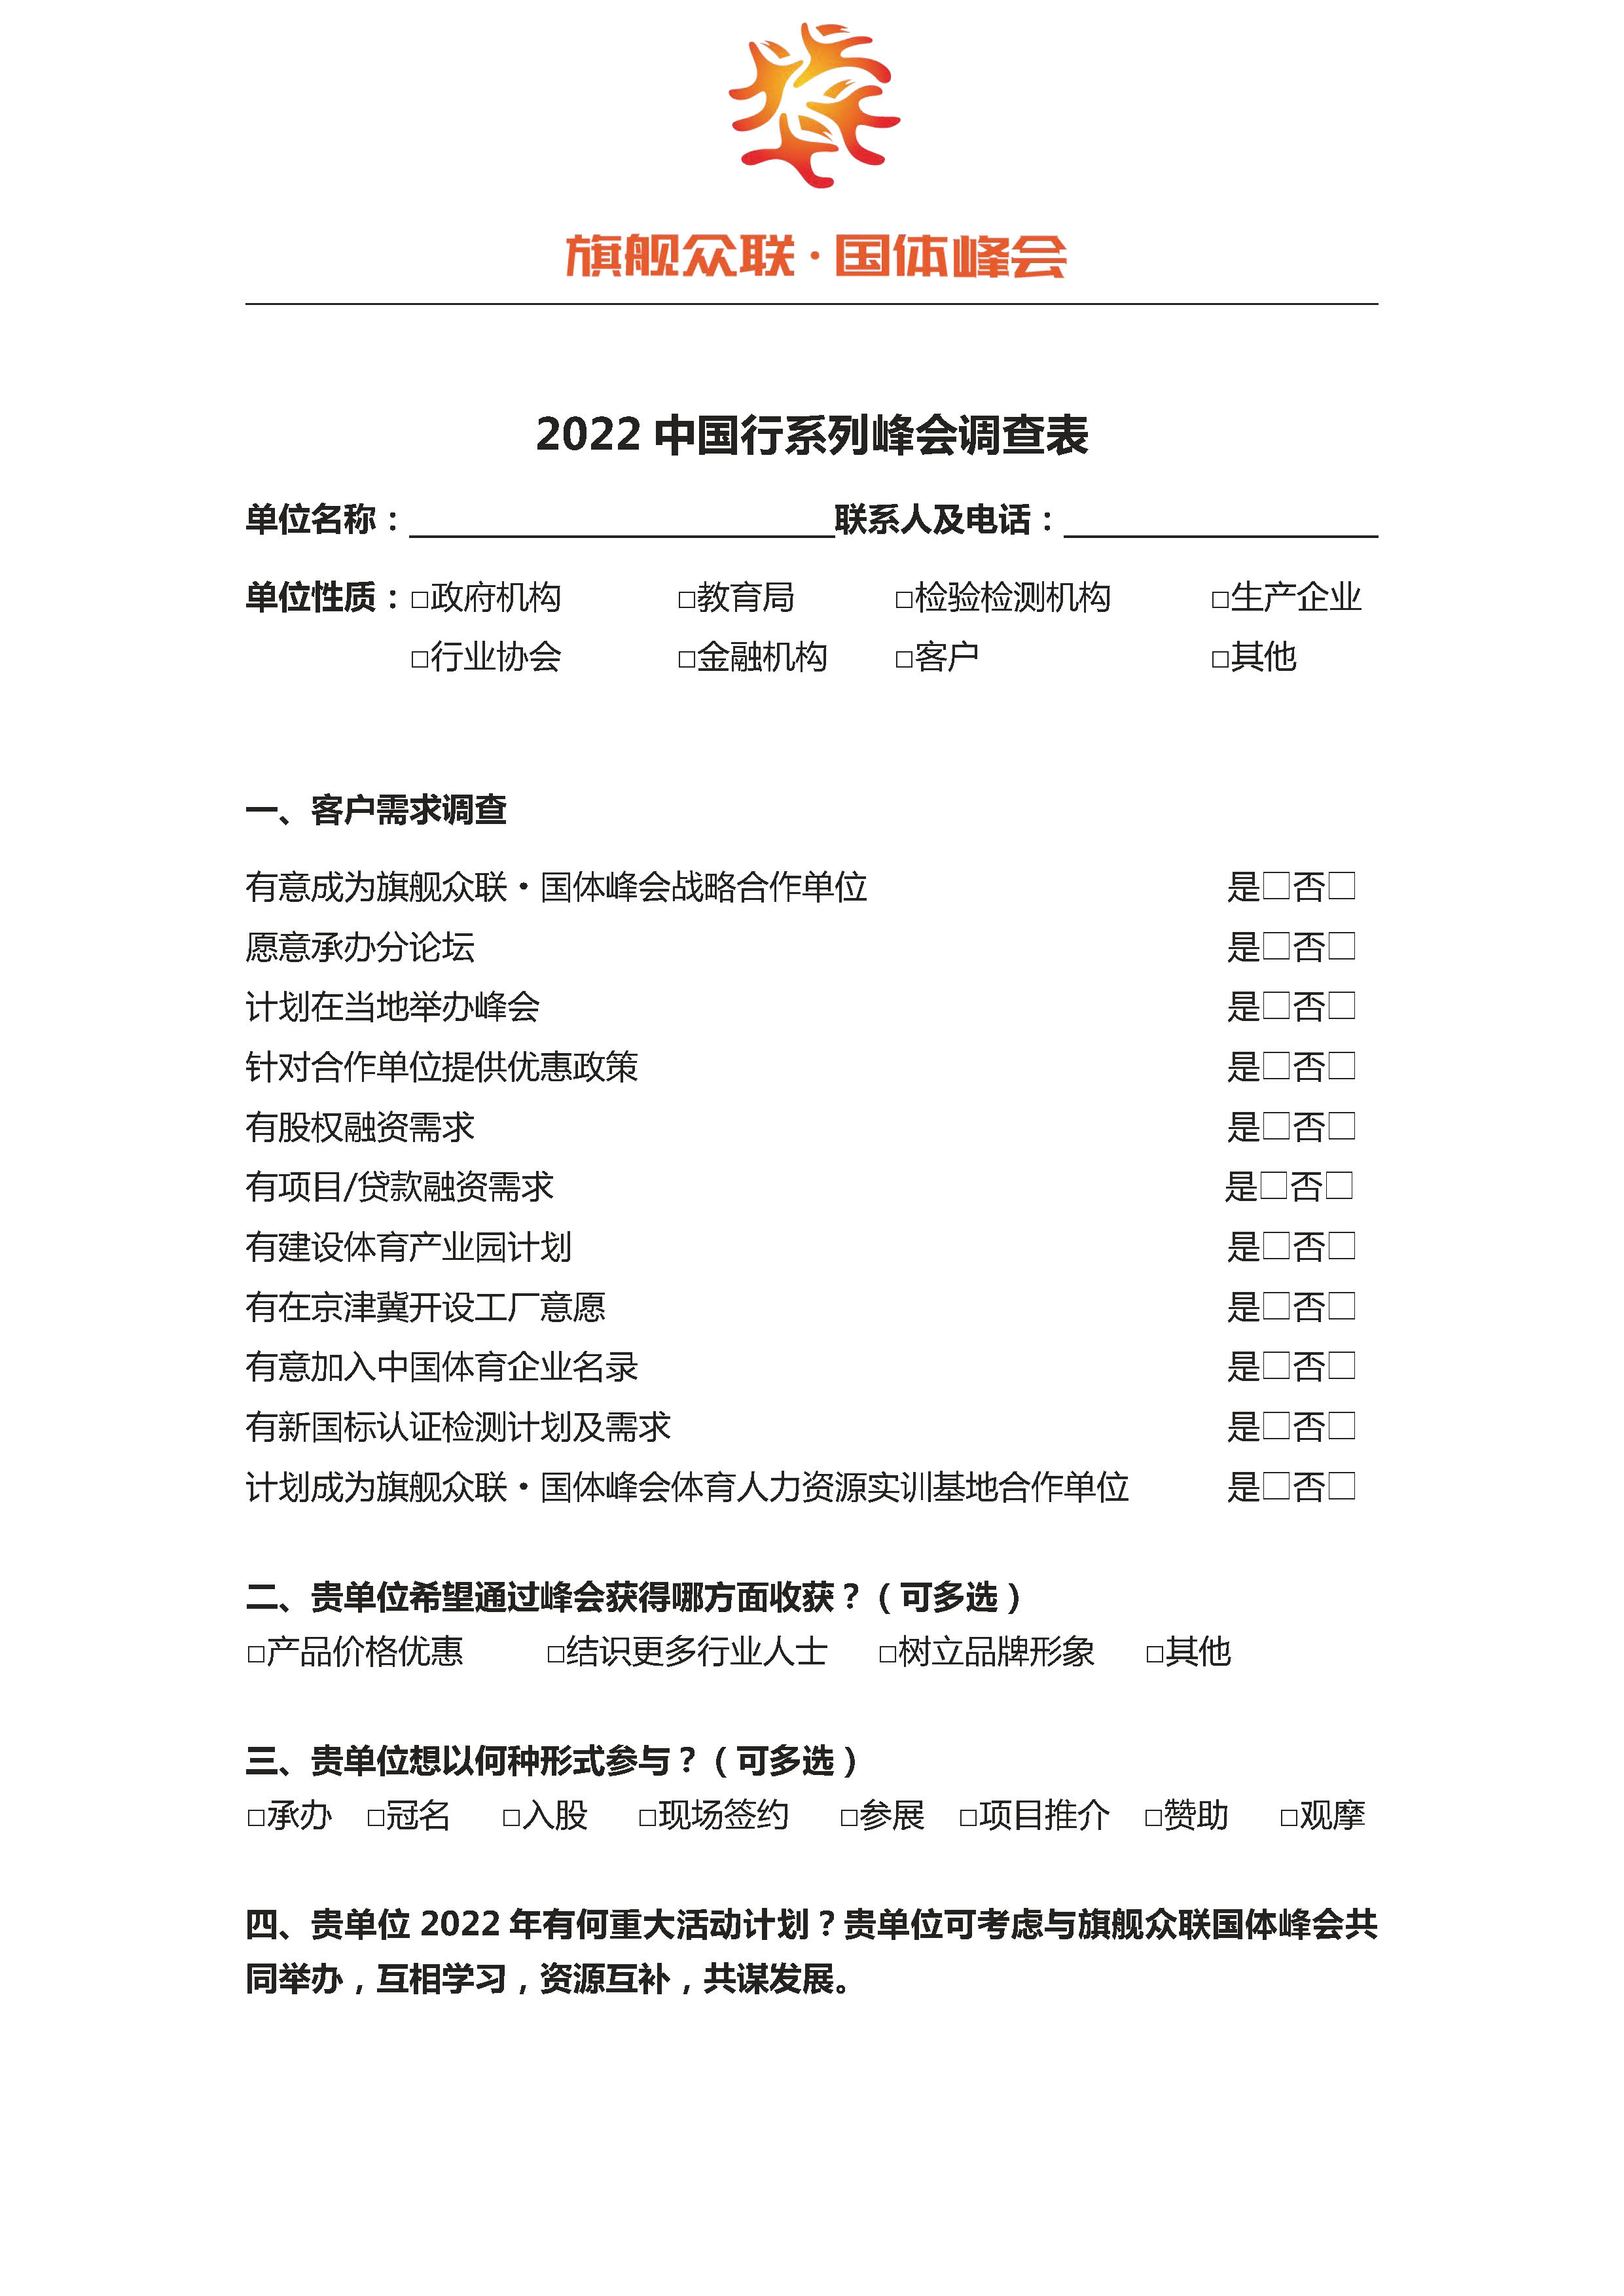 4-2022年中国行峰会调查表---2021.11.27.jpg